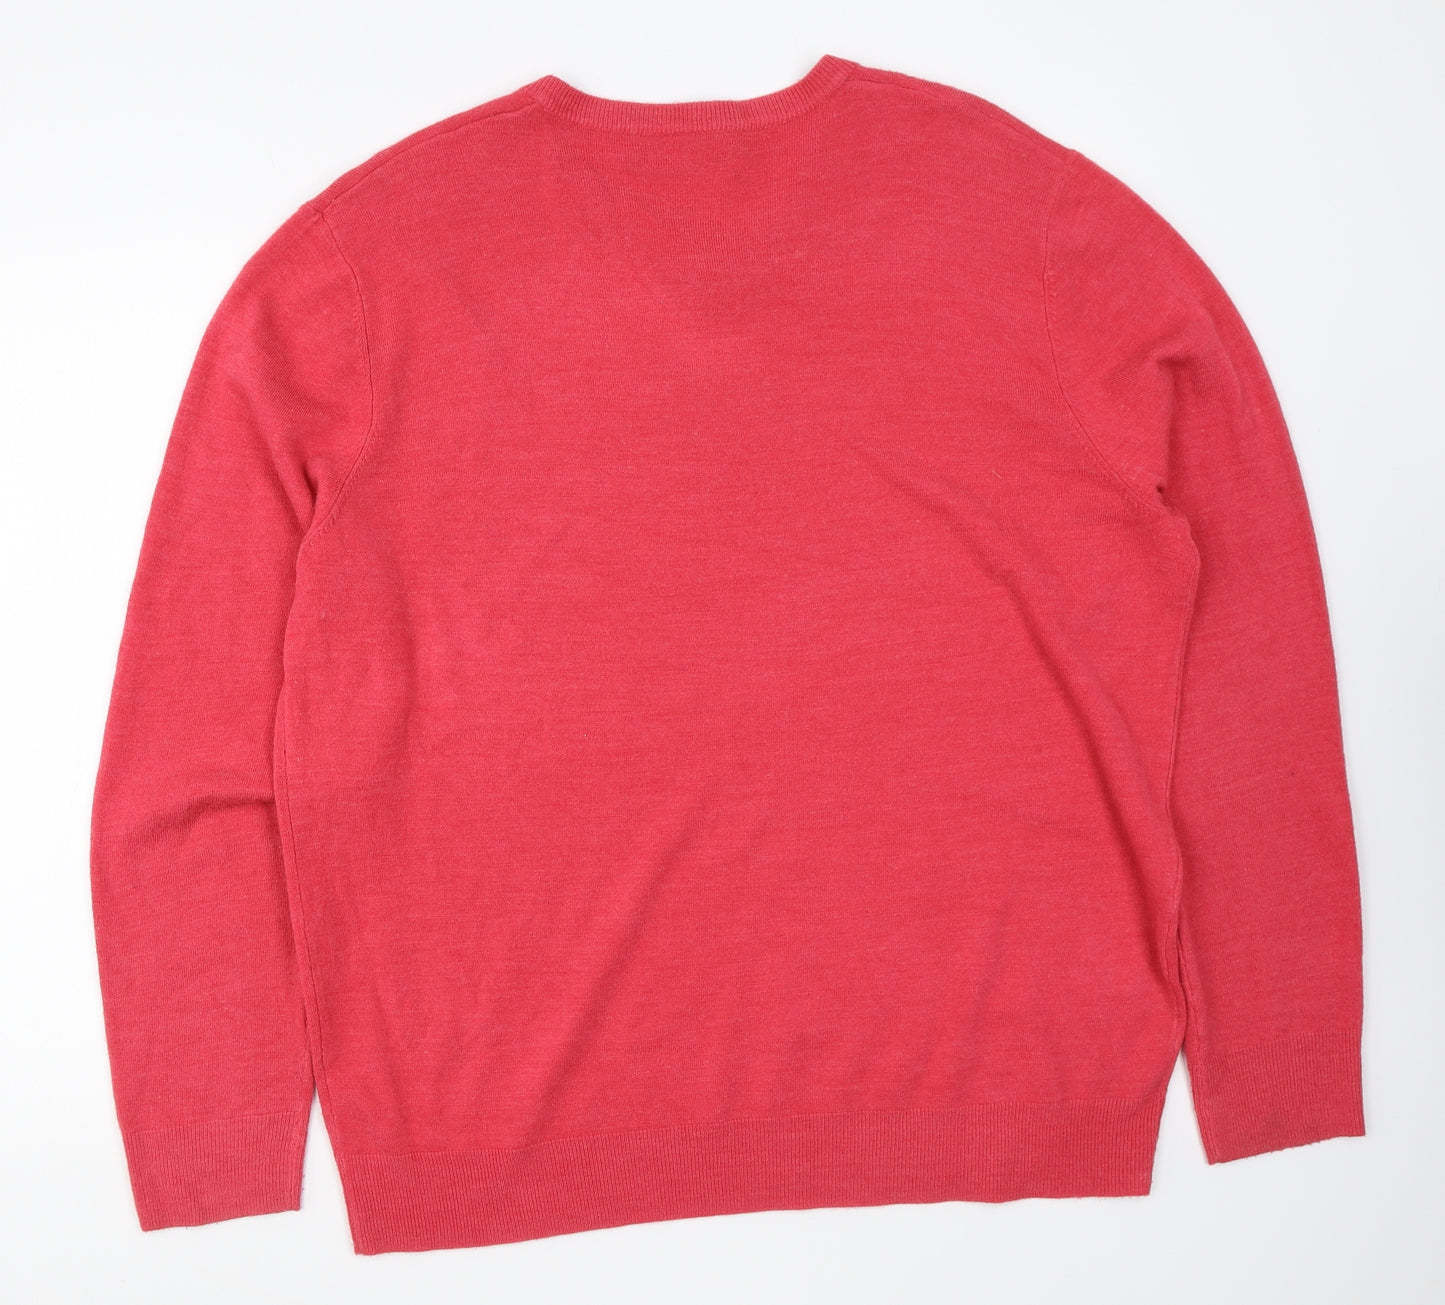 Atlantic Bay Mens Red V-Neck Acrylic Pullover Jumper Size XL